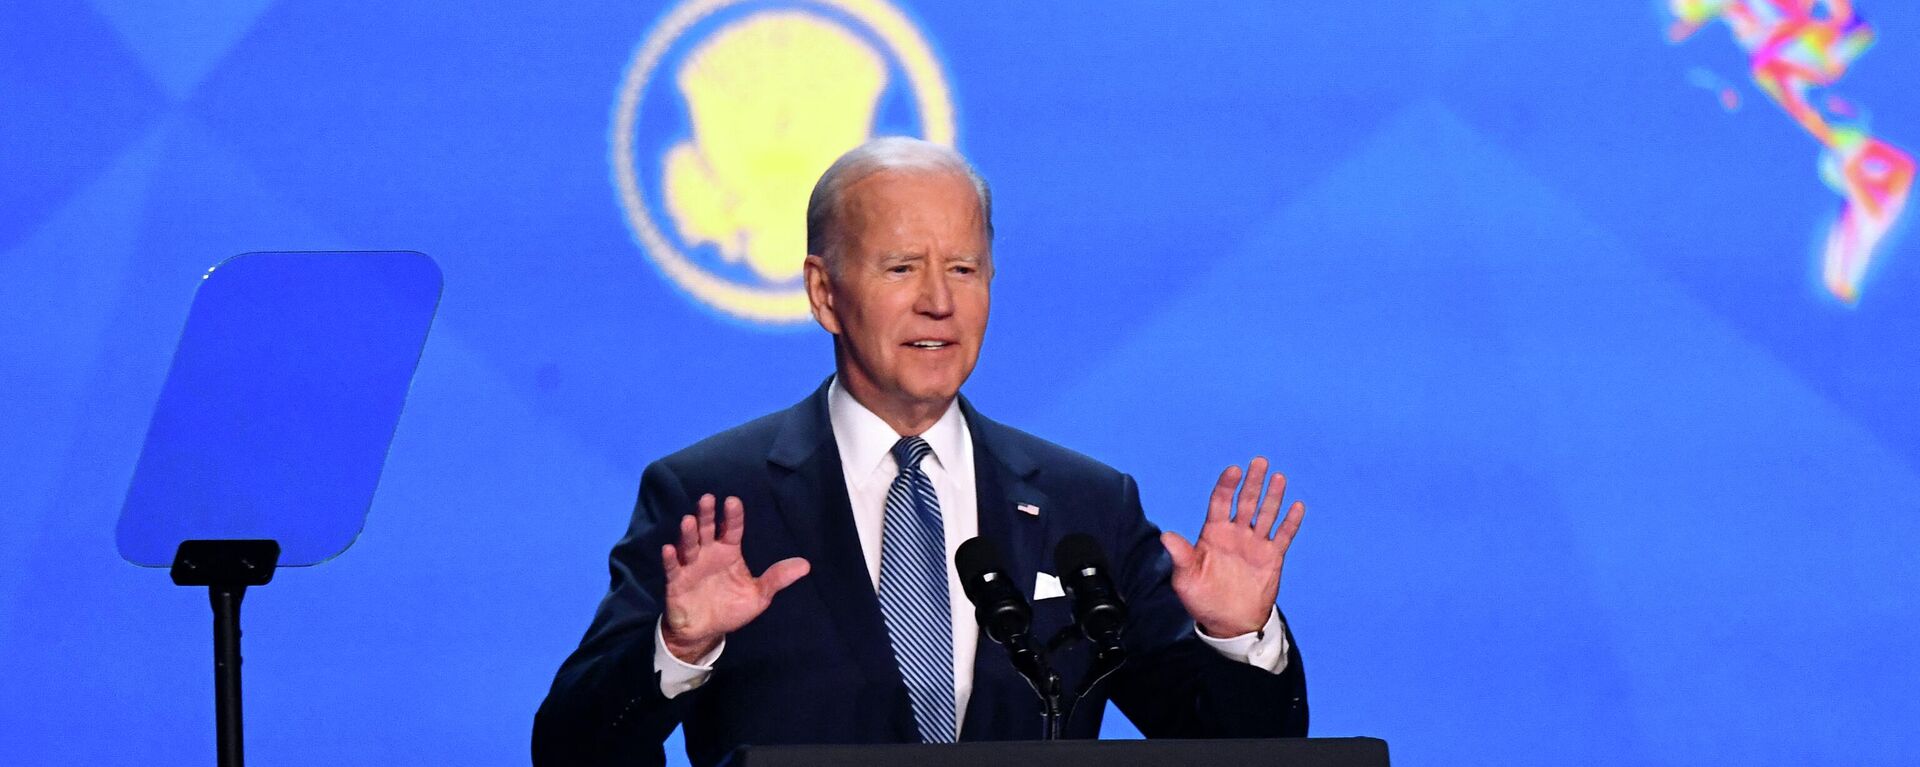 Joe Biden, presidente de EEUU, durante su discurso en la IX Cumbre de las Américas - Sputnik Mundo, 1920, 09.06.2022